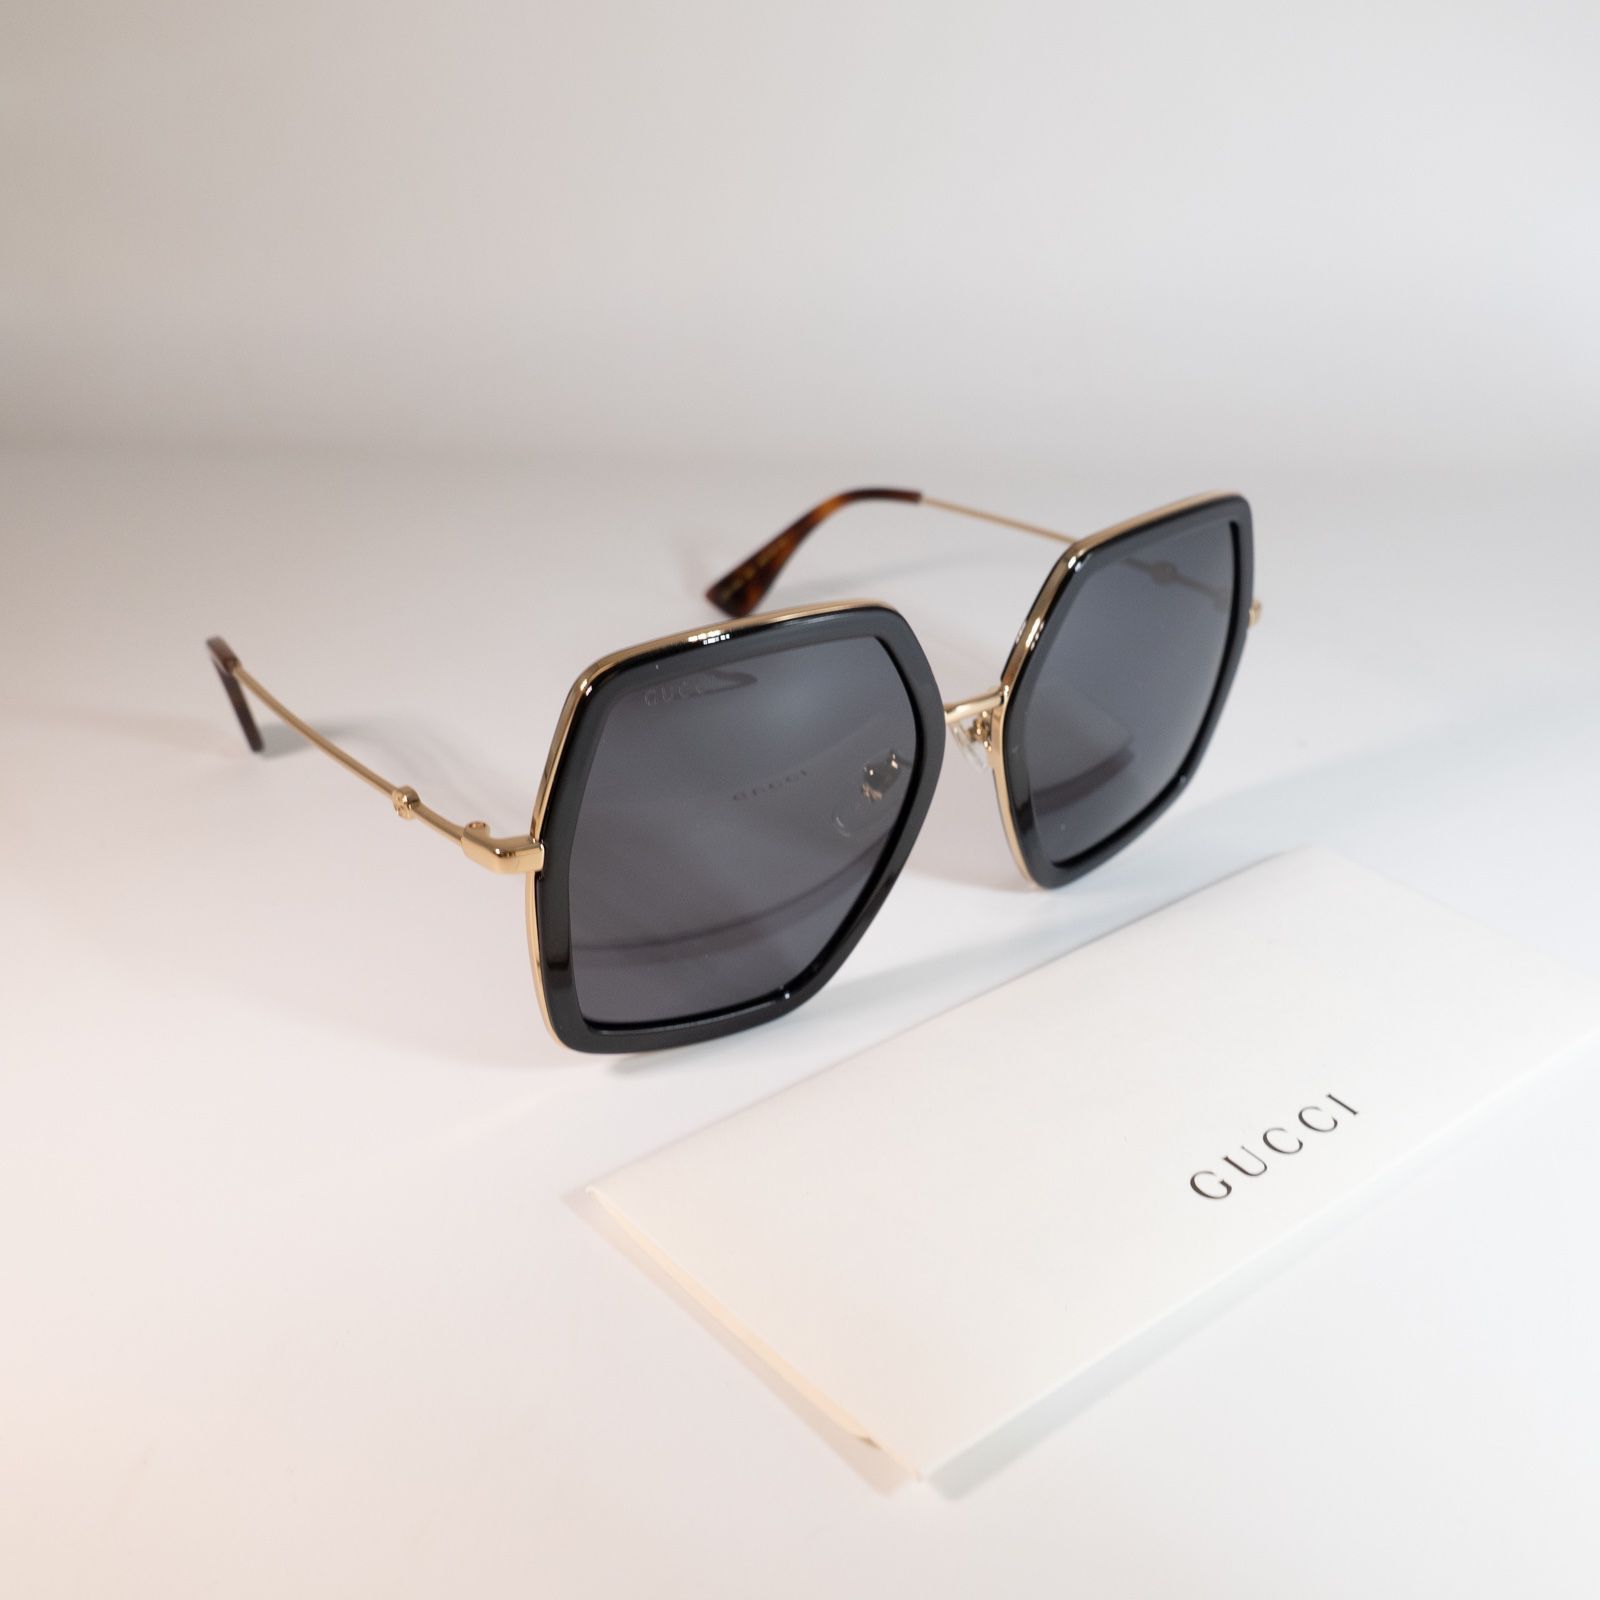 Gucci GG0106 Black Oversized Sunglasses